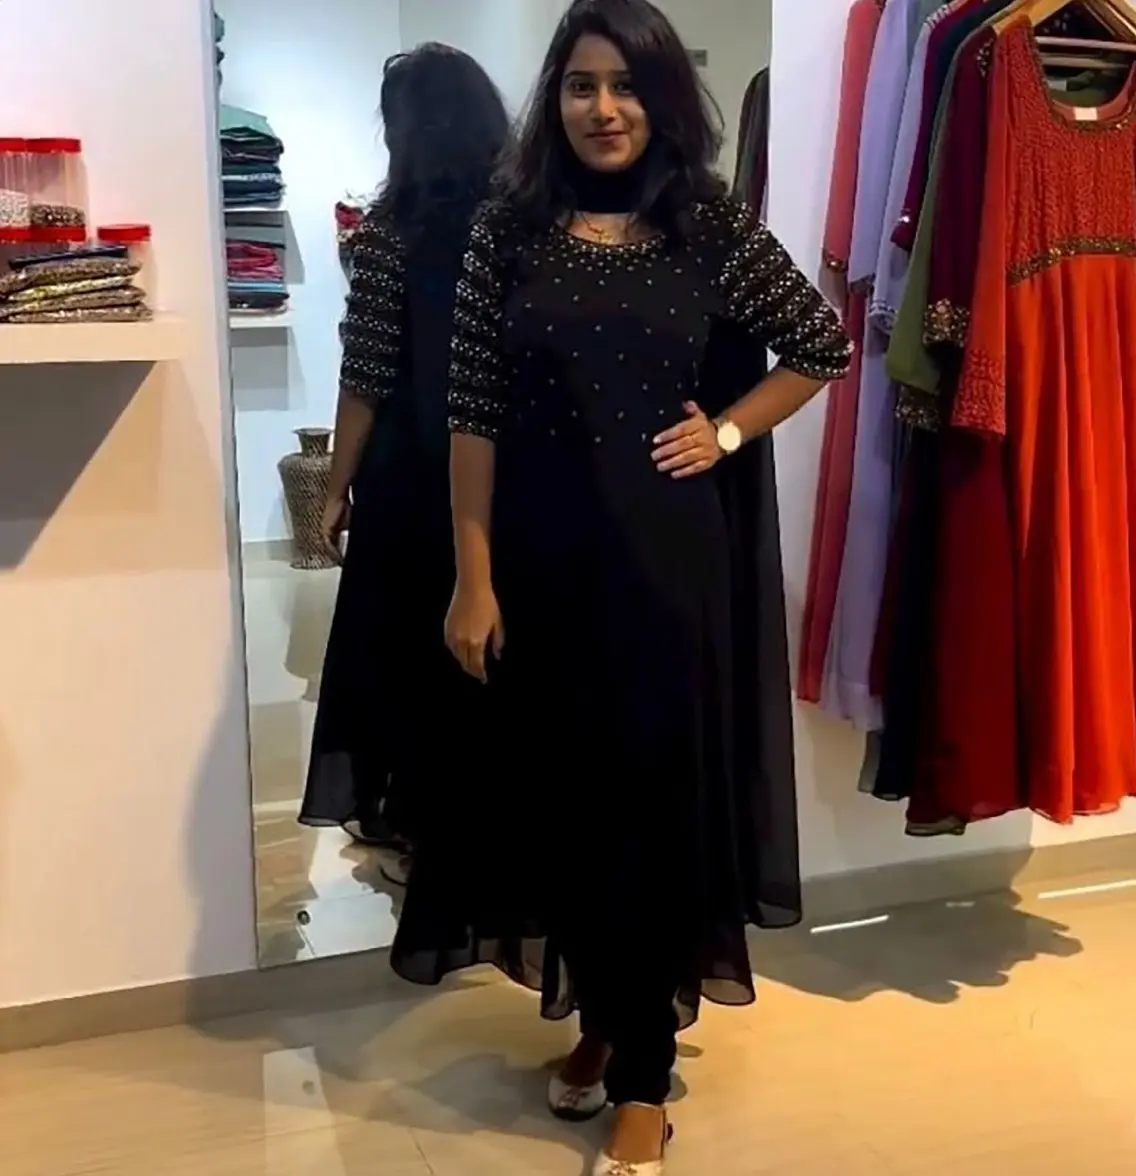 Yeni geleneksel hint pakistanlı ipek Salwar Kameez elbise takım Anarkali tarzı elbise kadınlar için toptan fiyat Bollywood elbise